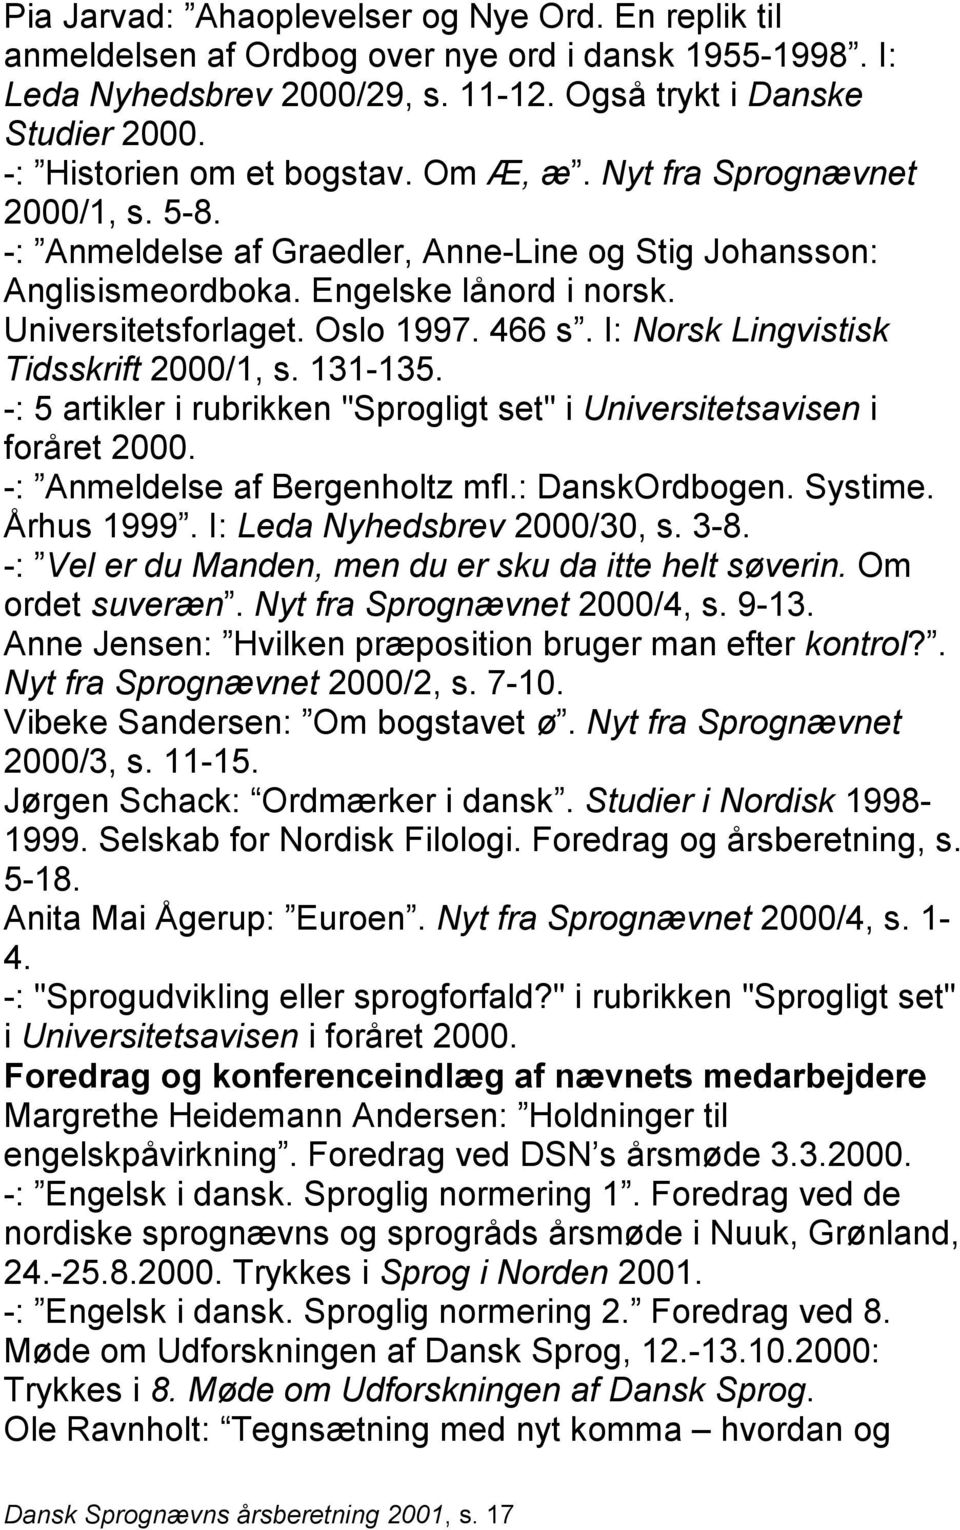 Oslo 1997. 466 s. I: Norsk Lingvistisk Tidsskrift 2000/1, s. 131-135. -: 5 artikler i rubrikken "Sprogligt set" i Universitetsavisen i foråret 2000. -: Anmeldelse af Bergenholtz mfl.: DanskOrdbogen.